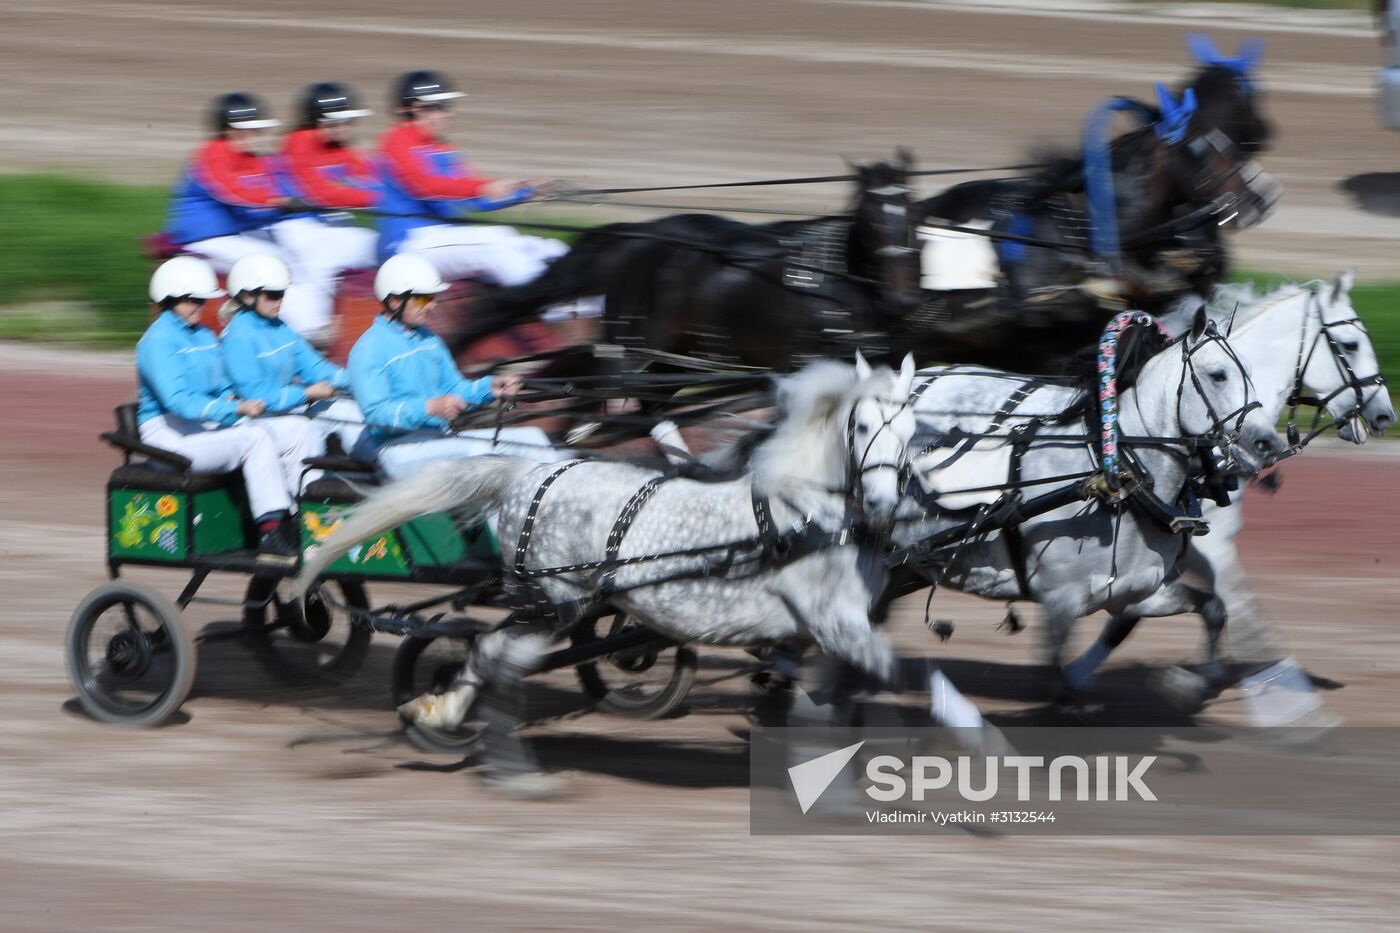 Radio Monte Carlo Grand Prix horse race